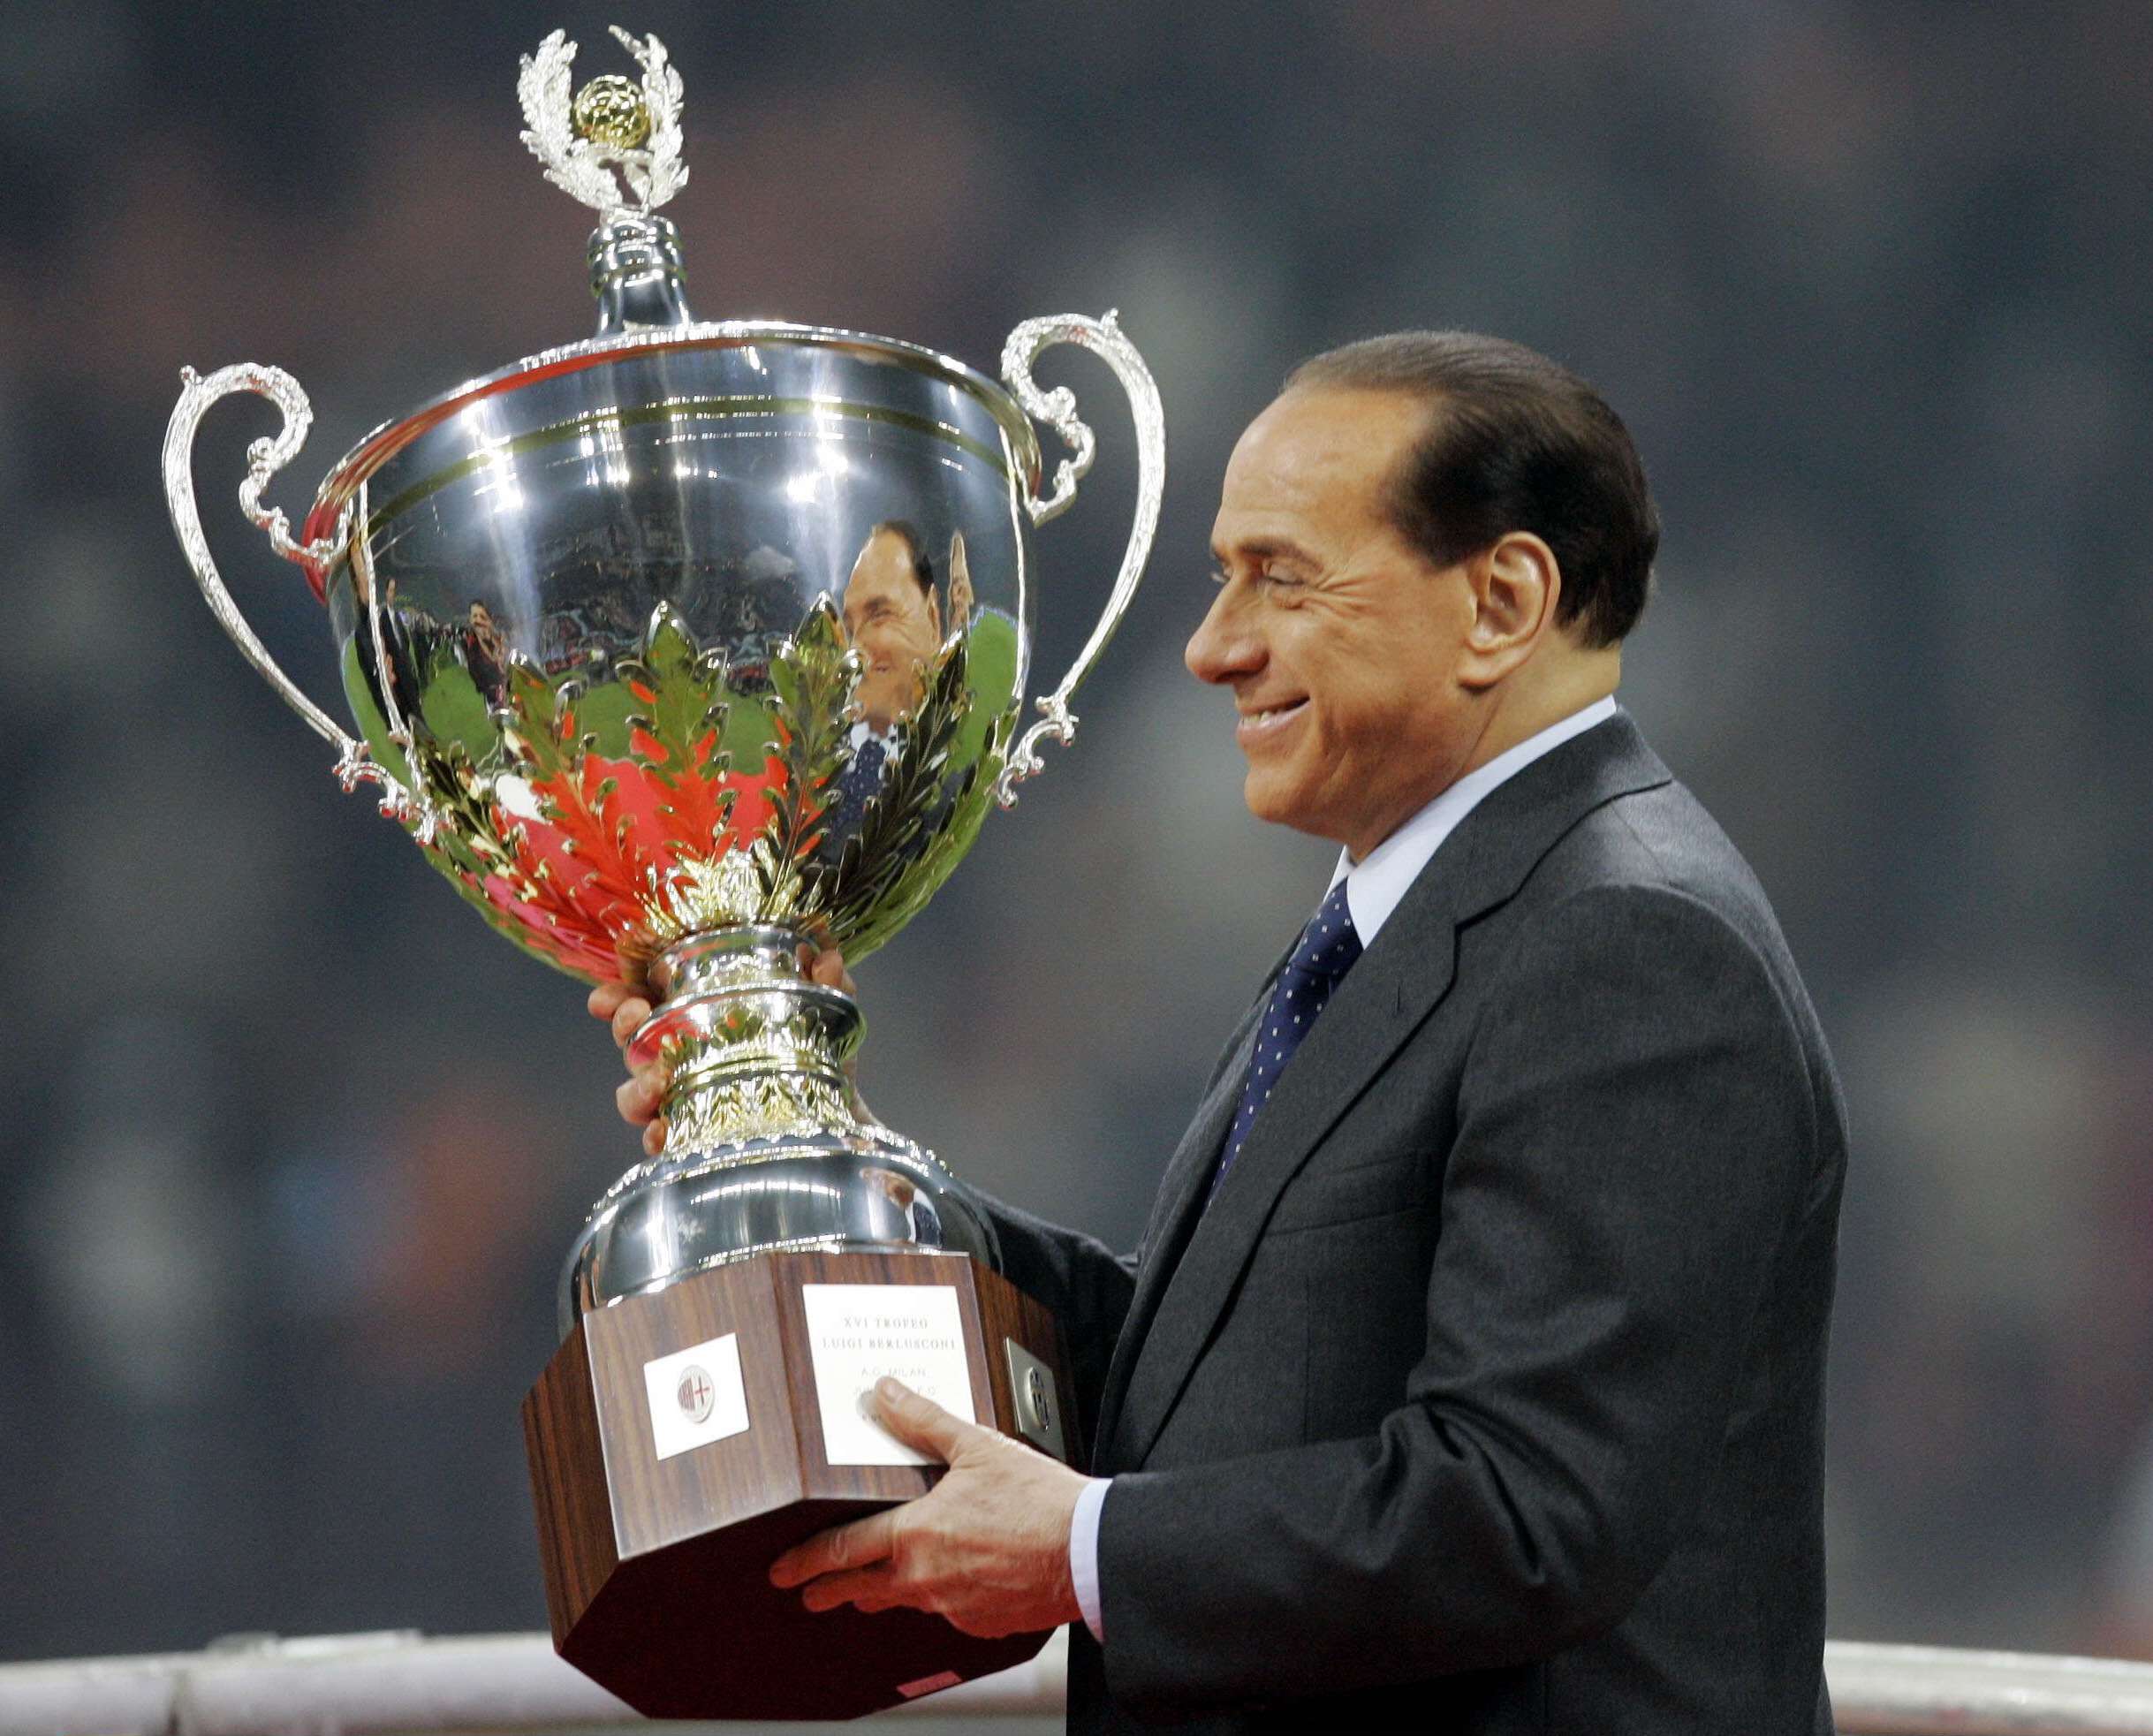 Le président de l'AC Milan, Silvio Berlusconi, tient la coupe après le match d'exhibition «Trofeo Berlusconi» entre l'AC Milan et la Juventus, joué au stade San Siro de Milan le samedi 6 janvier 2007. © ALBERTO PELLASCHIAR/AP/SIPA